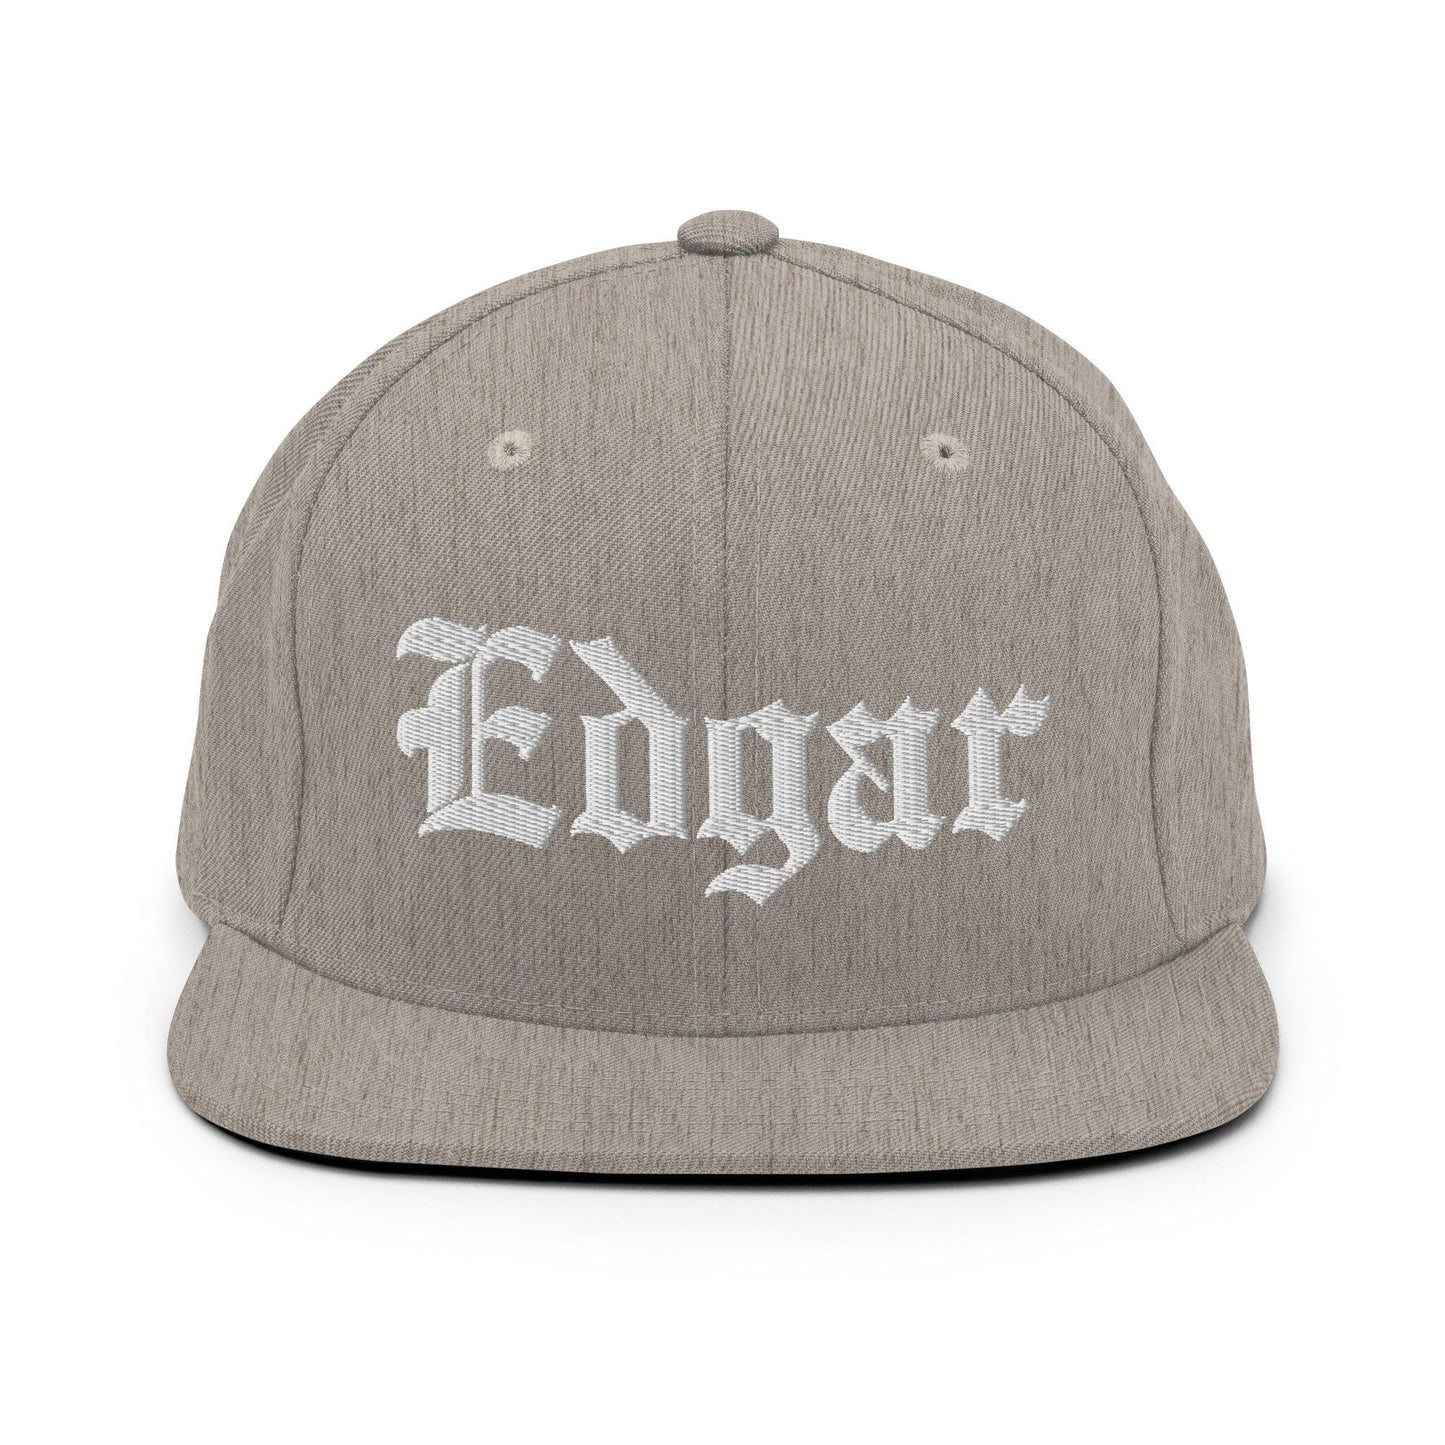 Edgar Old English Snapback Hat Heather Grey